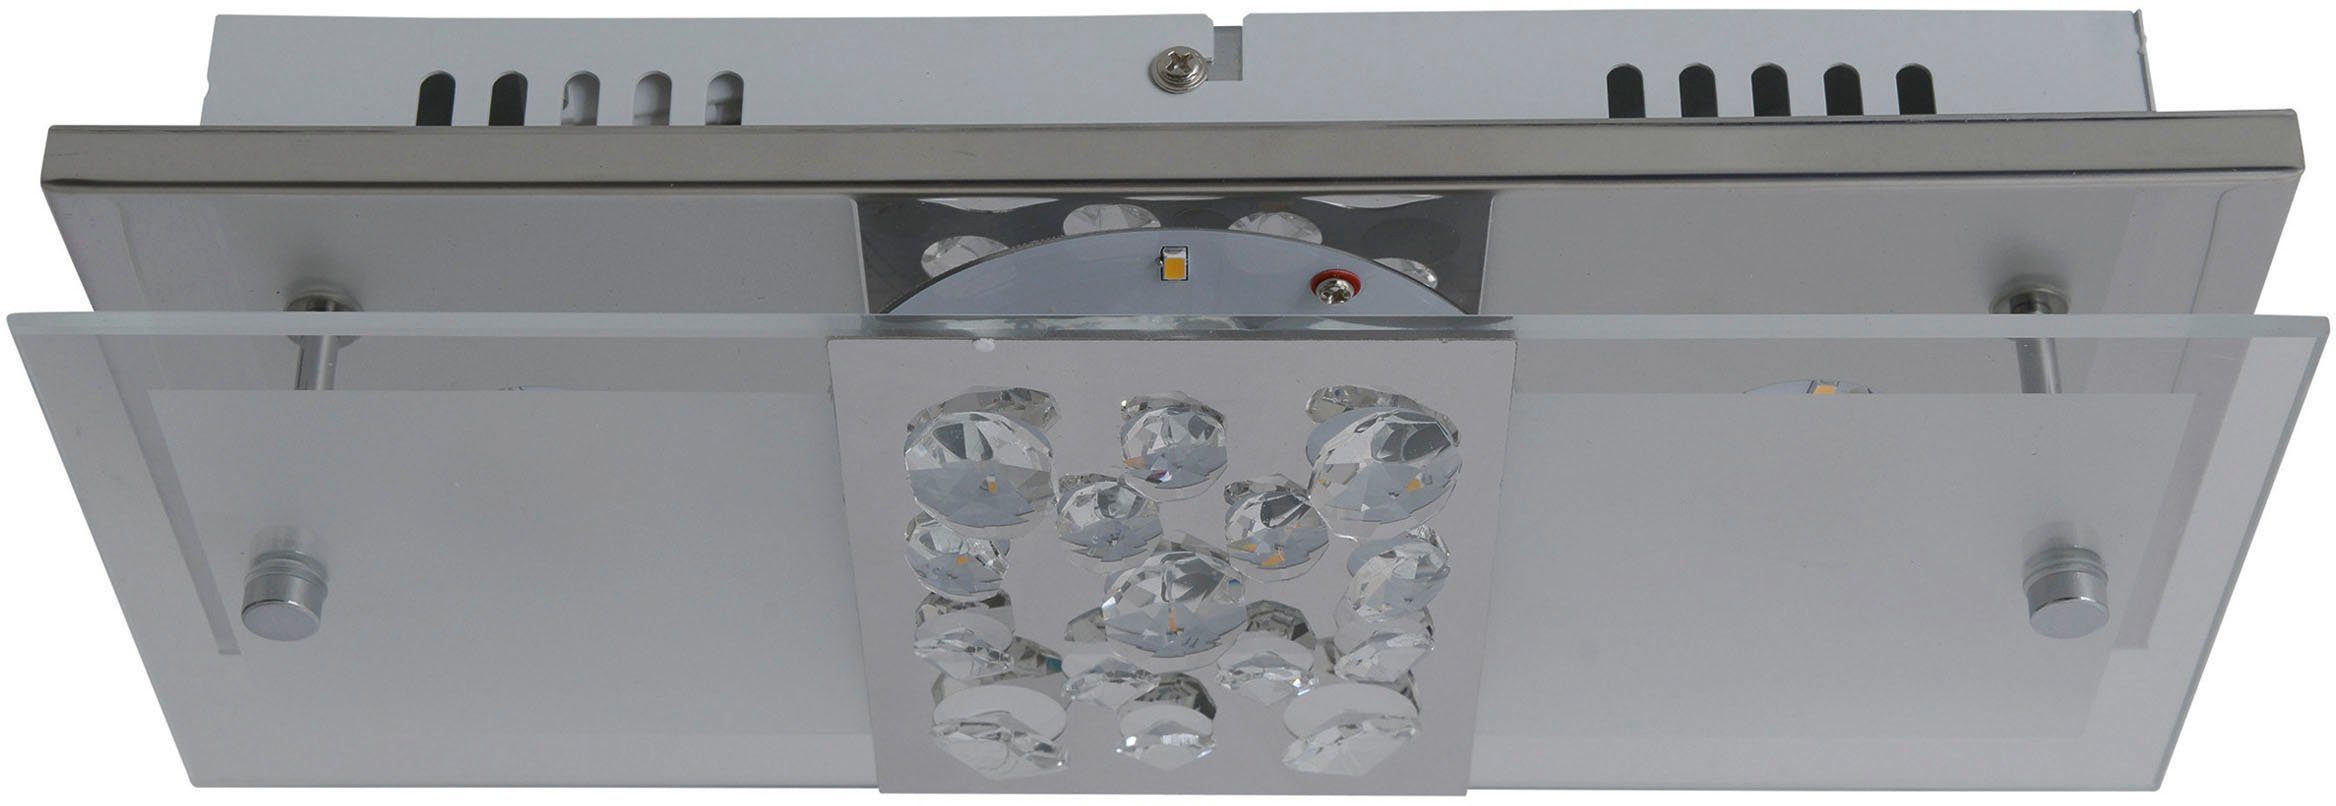 LED näve Kristallen, 11W Chur, incl. fest integriert, LED Warmweiß, teilsatiniert total mit chrom LED Deckenleuchte